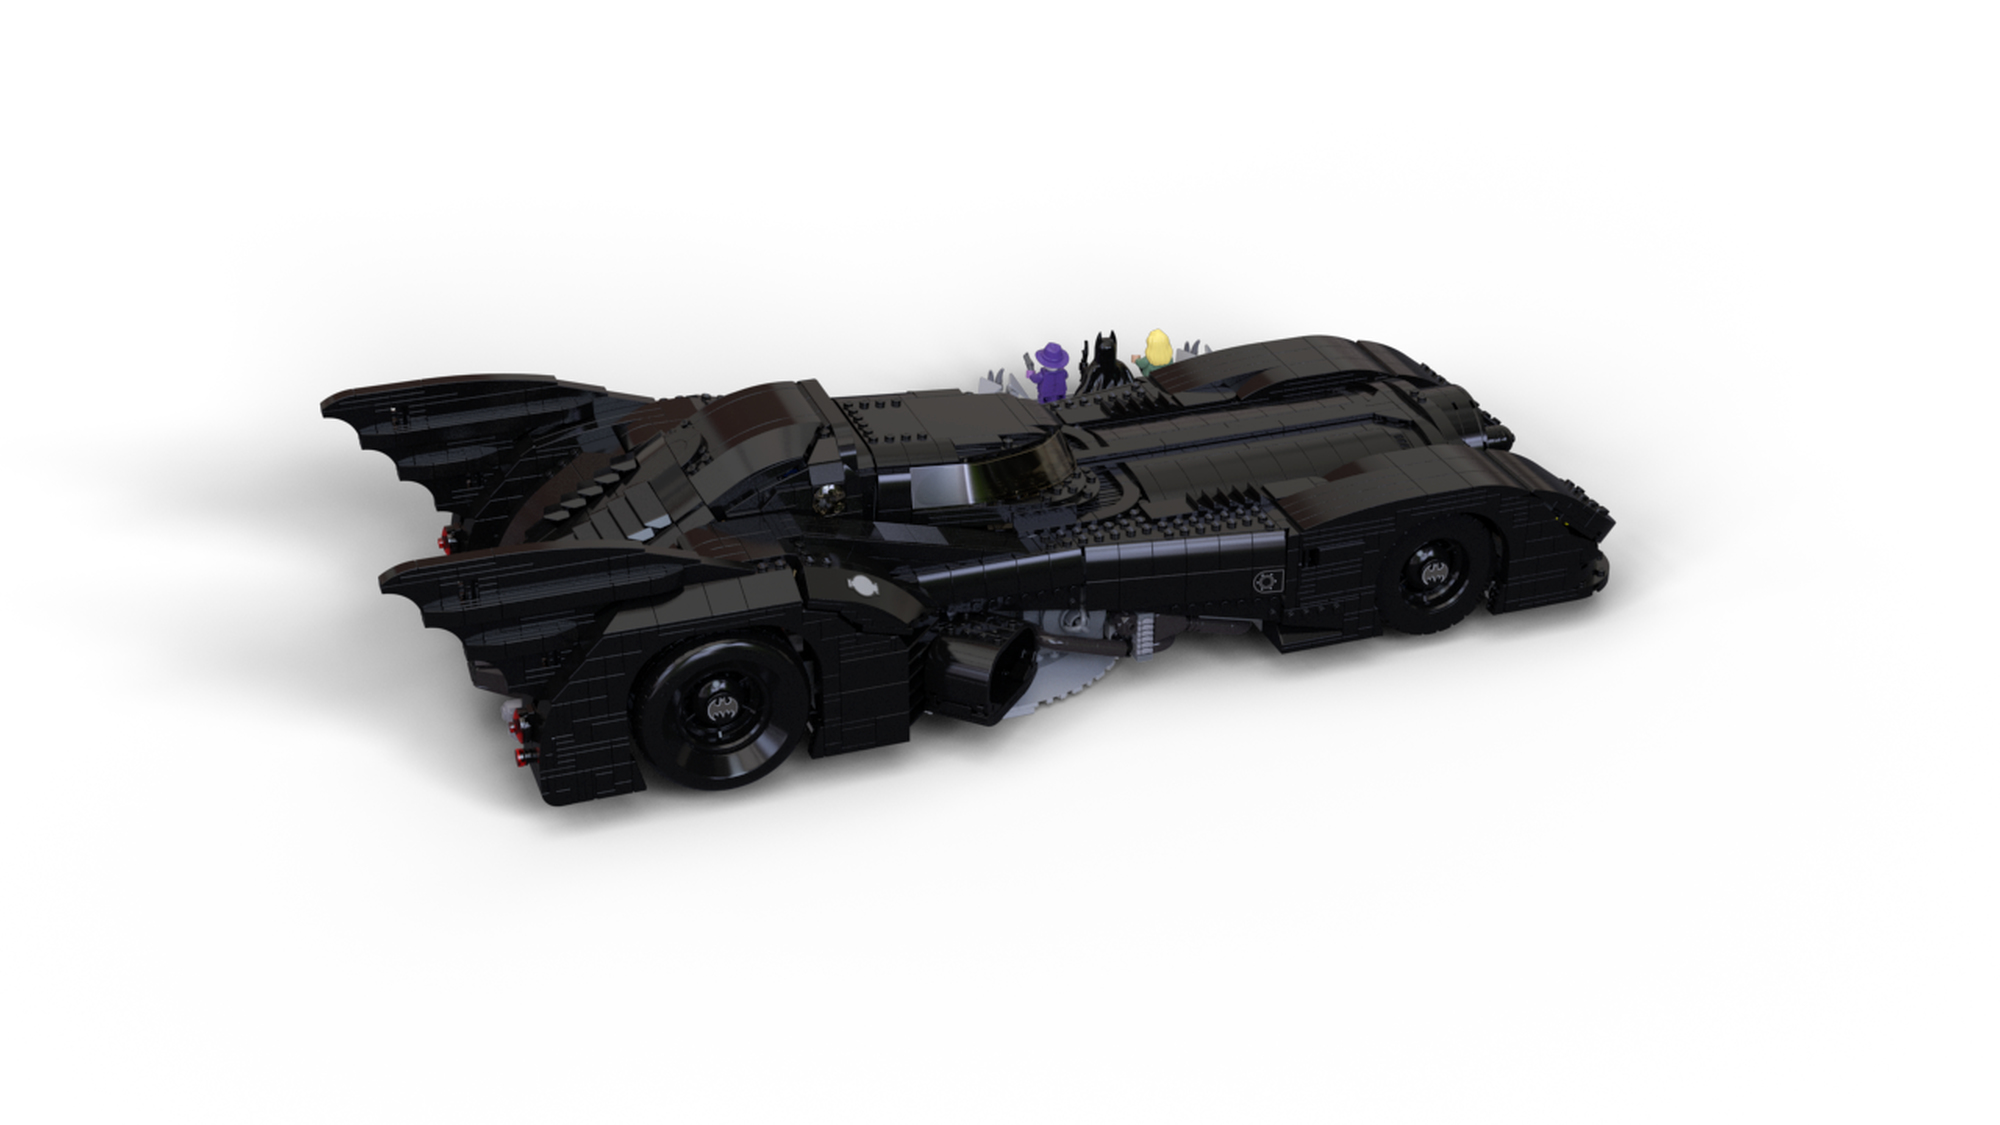 Chez LEGO : le set 76139 1989 Batmobile est disponible ! - HelloBricks